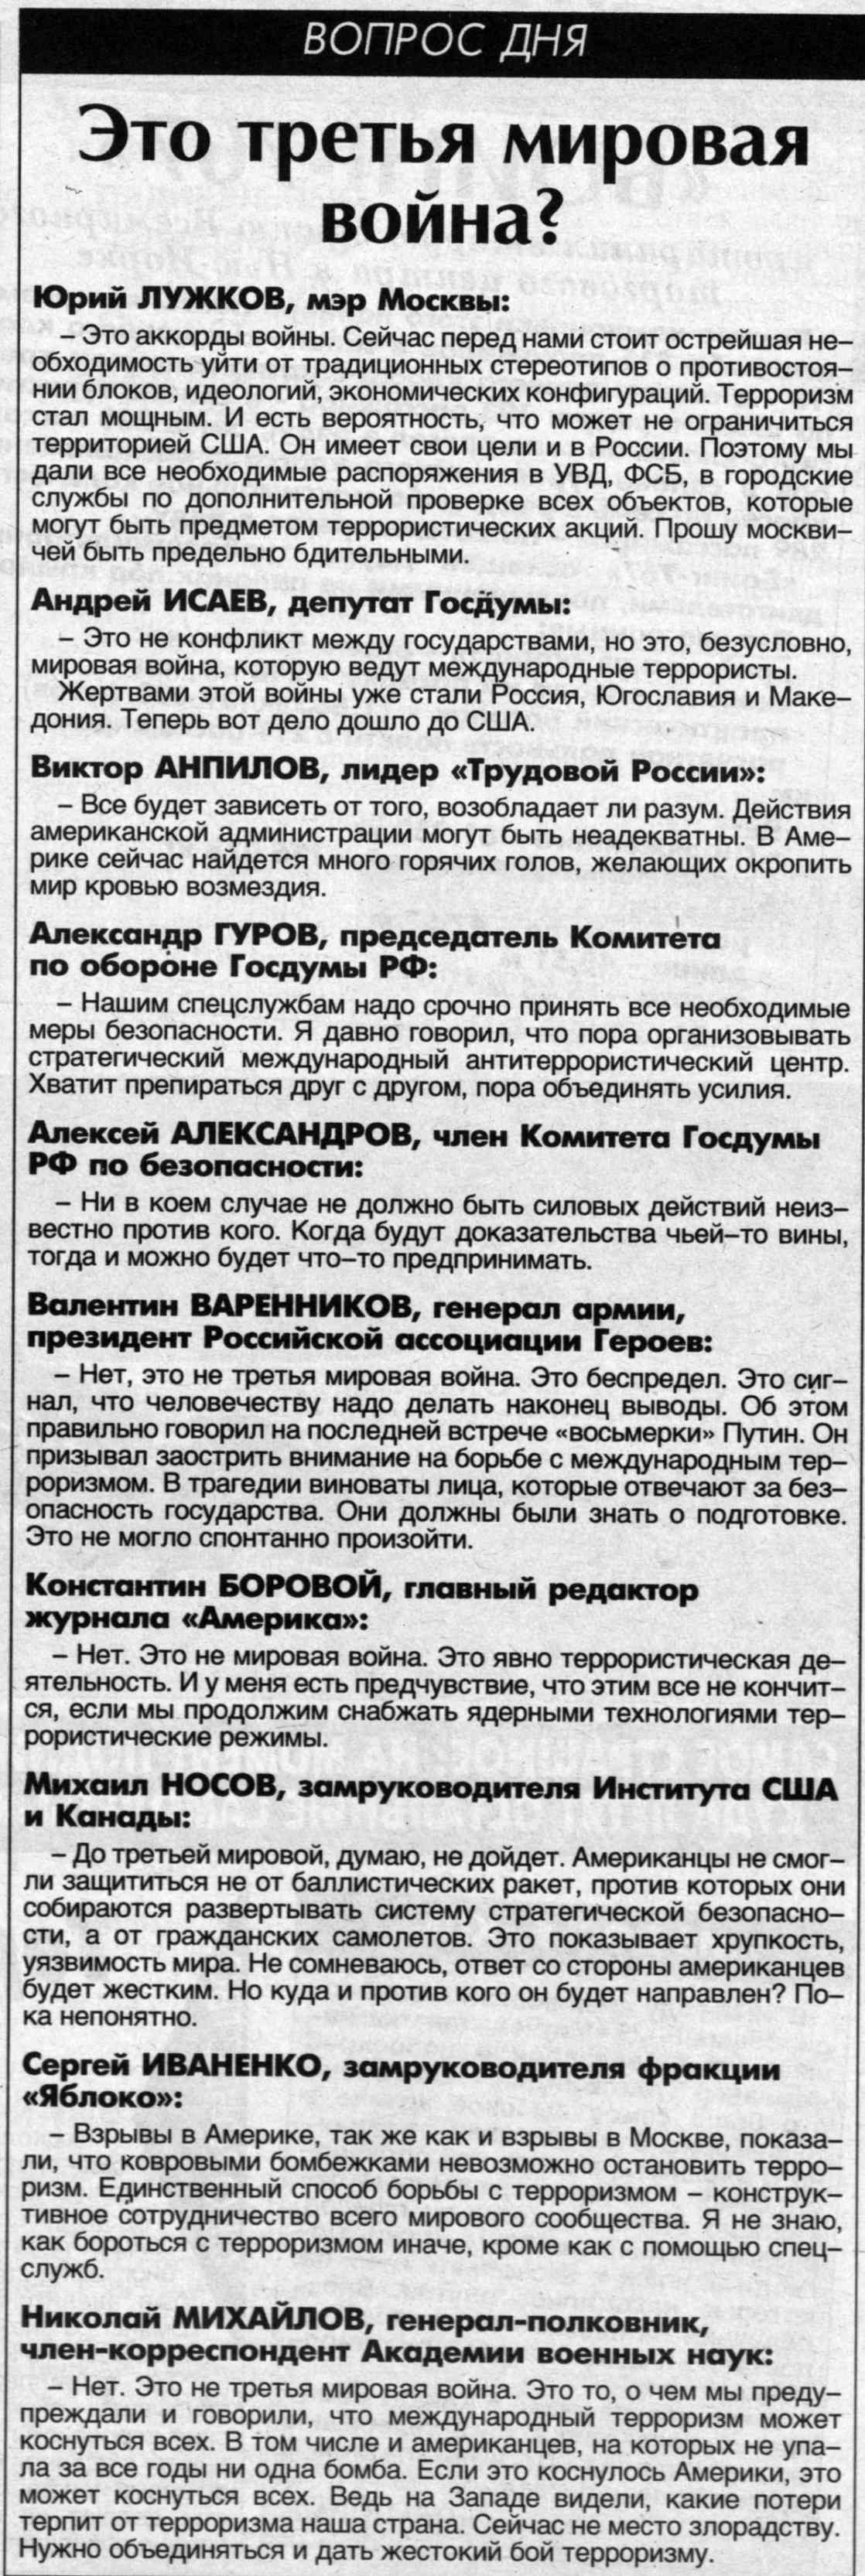 «Комсомольская правда», 12 сентября 2001 года